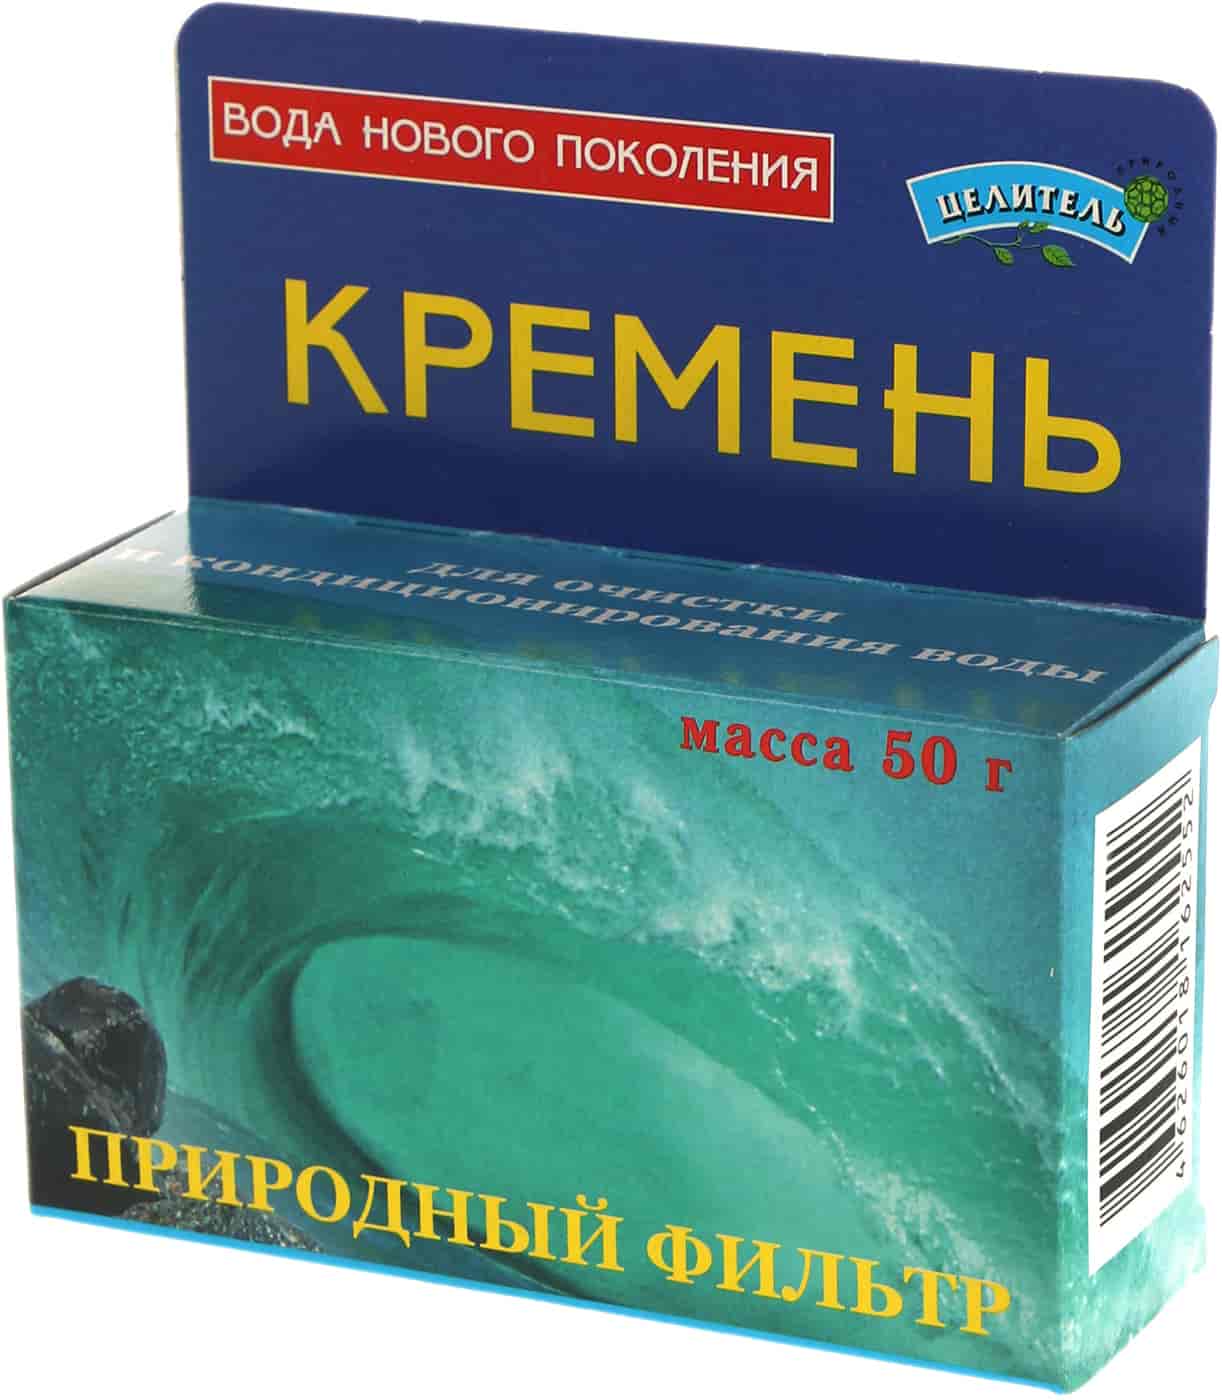 Природный фильтр для воды Кремень | 50 г | Природный целитель